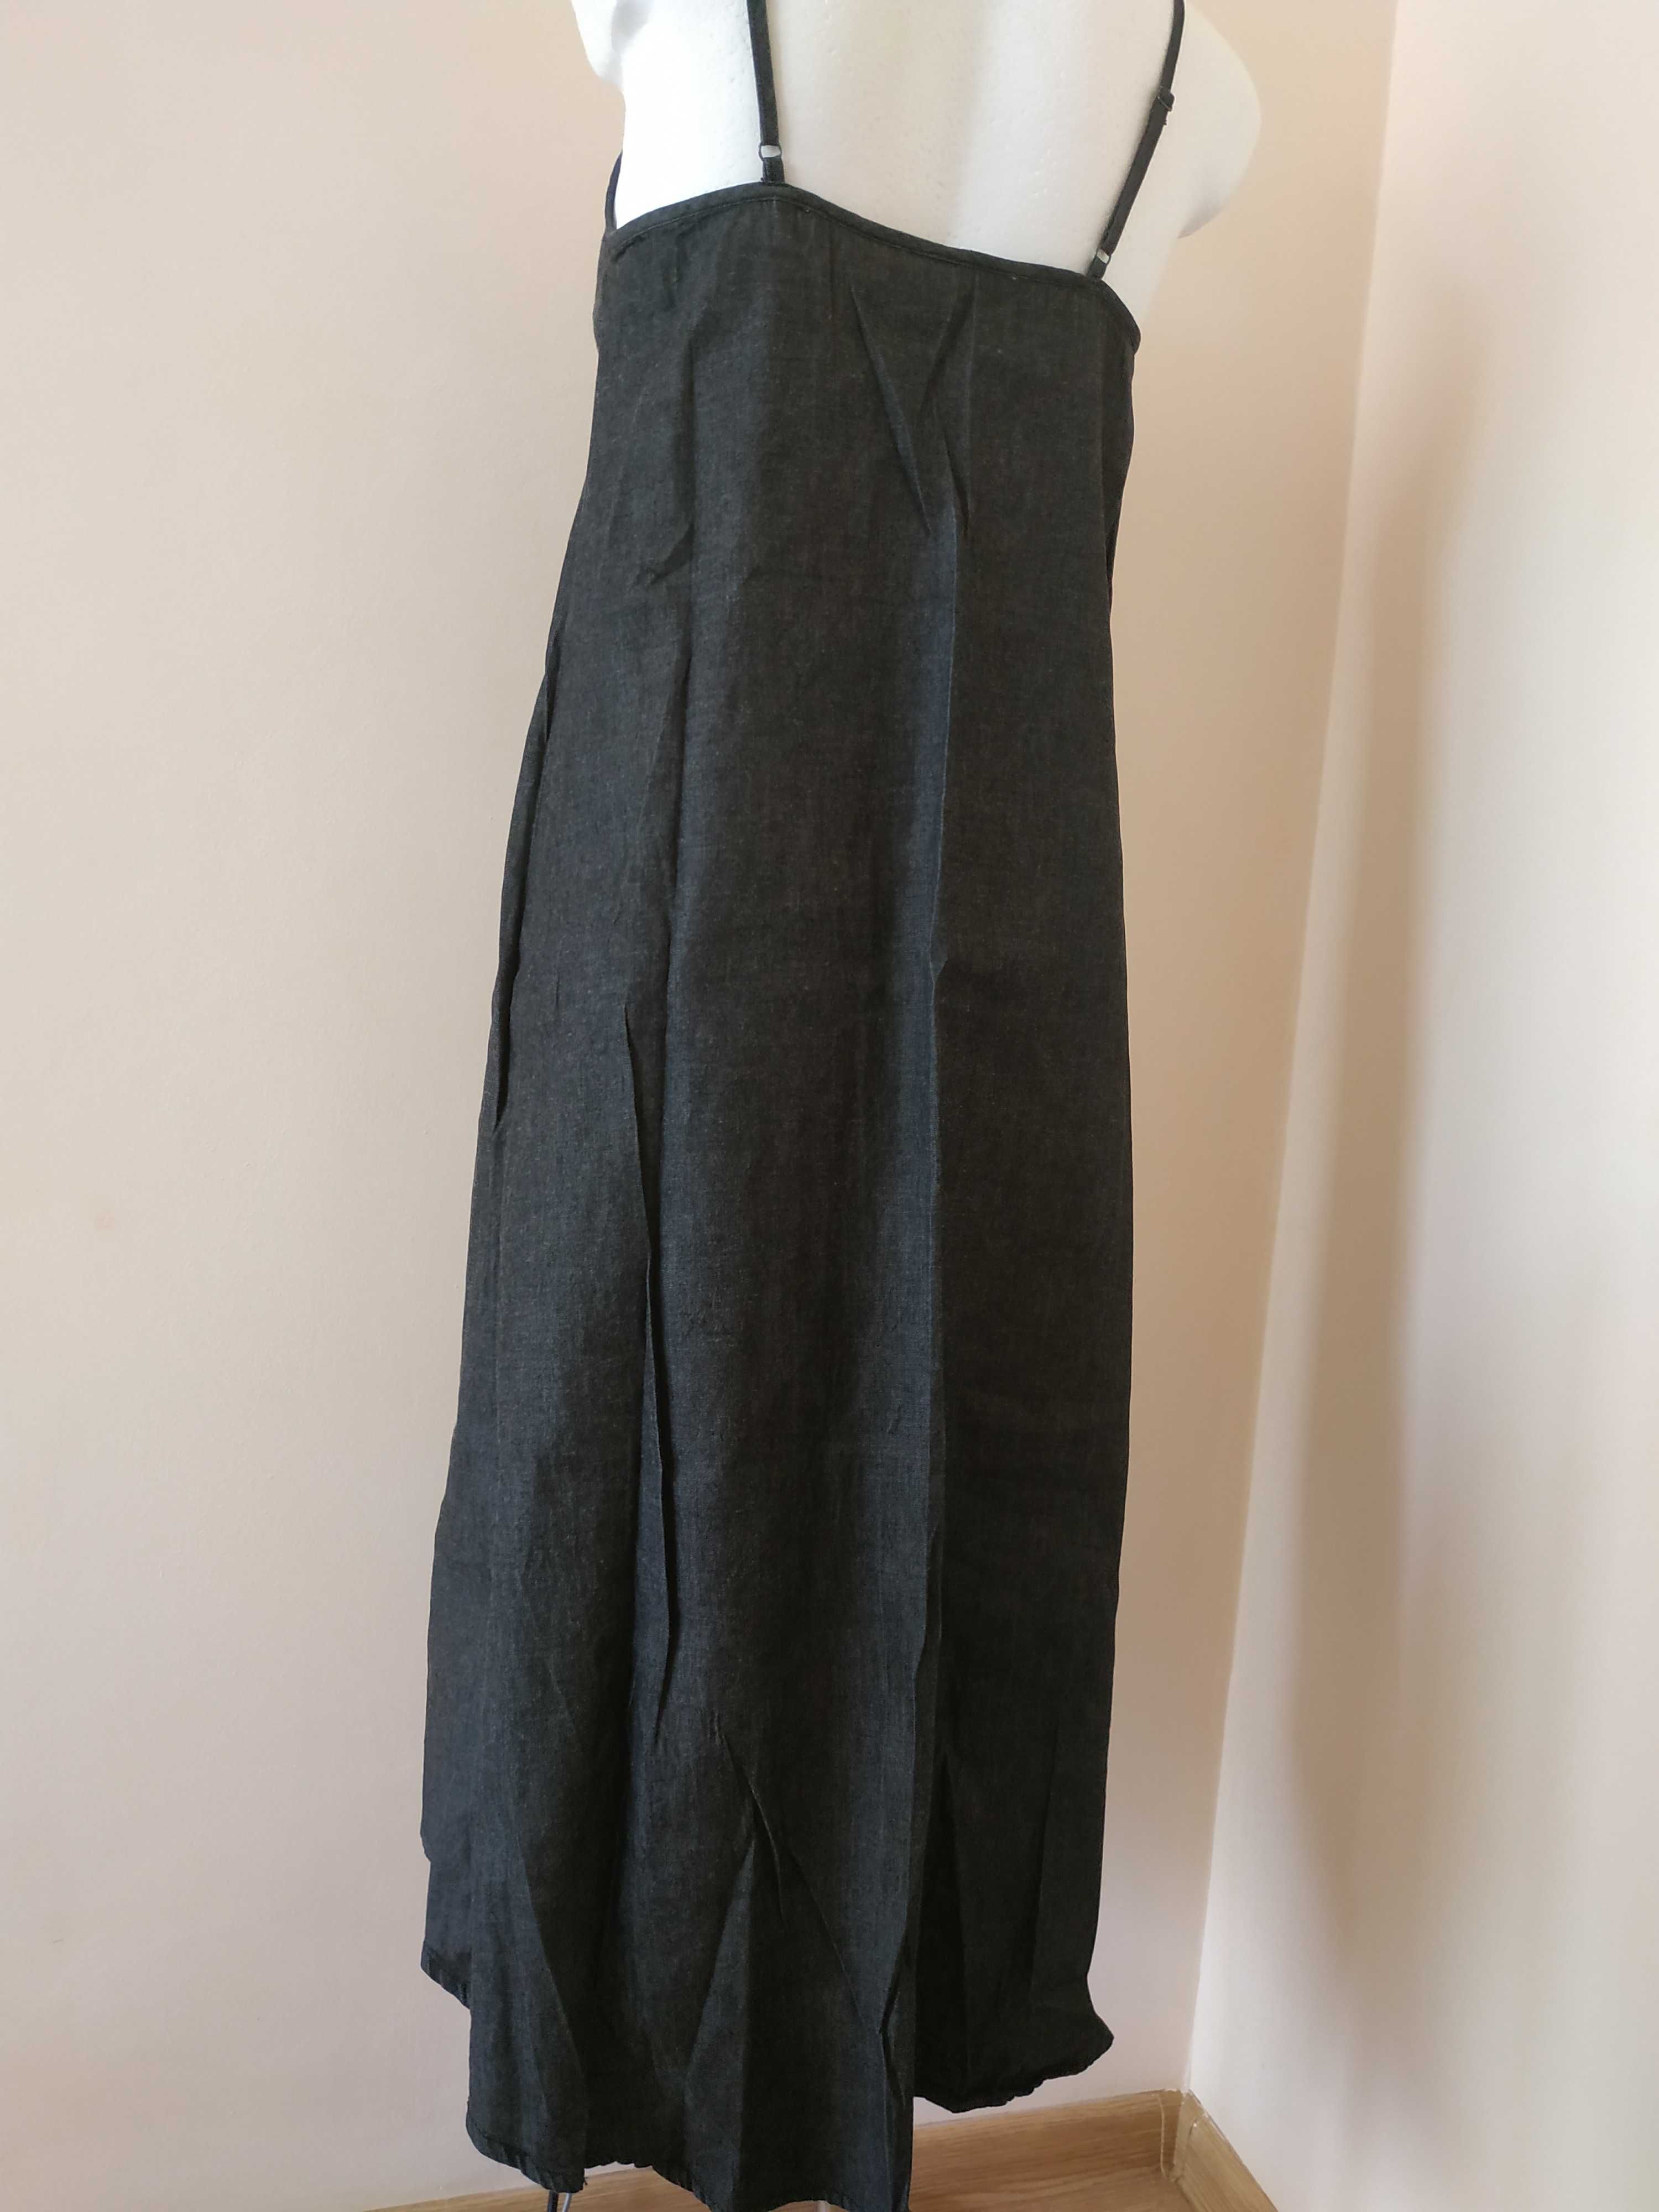 Czarna długa sukienka na ramiączkach cienki dżins 34/36